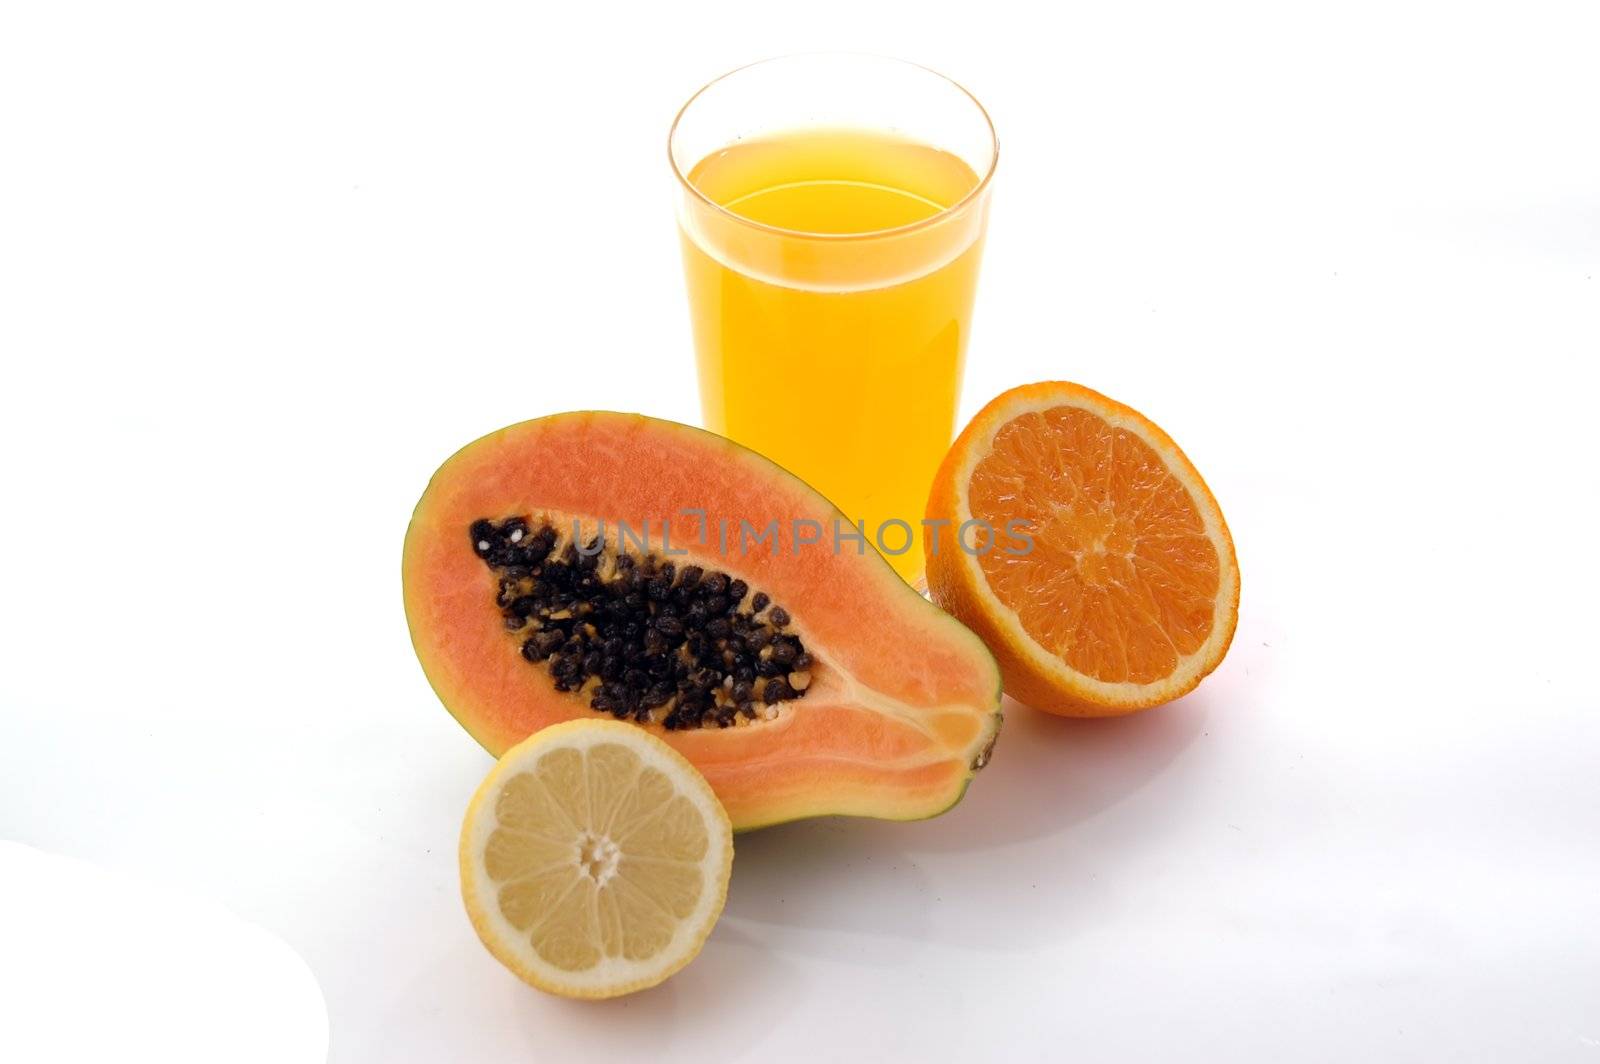 papaya lemon and oranje juice by raalves